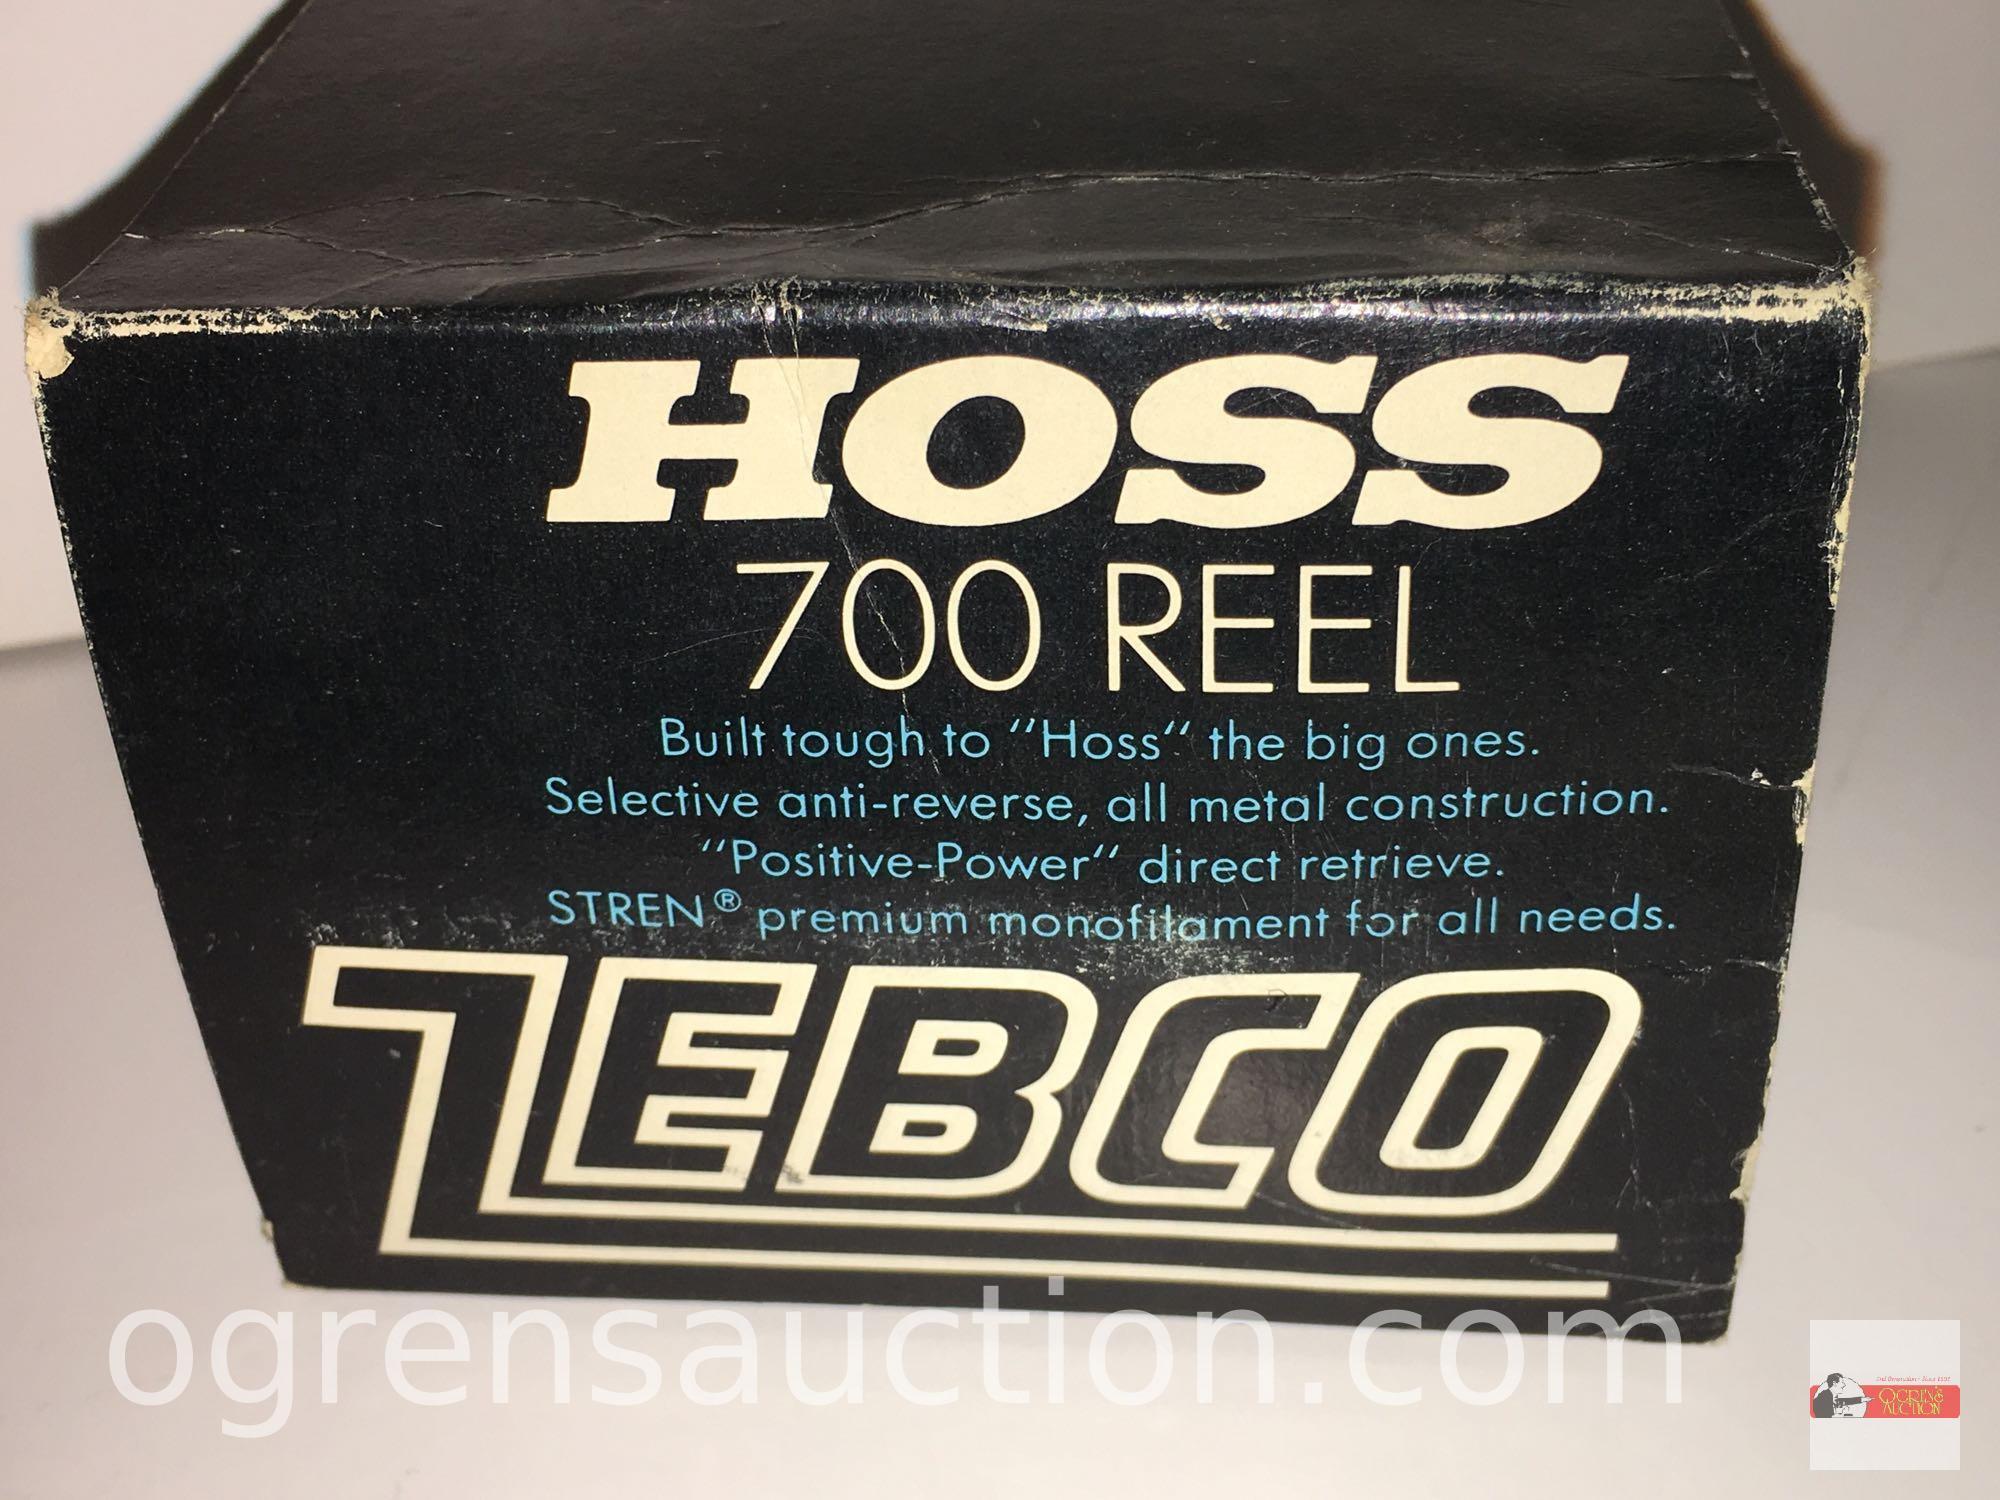 Fishing - Reels - Zebco Hoss 700 Reel, orig. box and paperwork